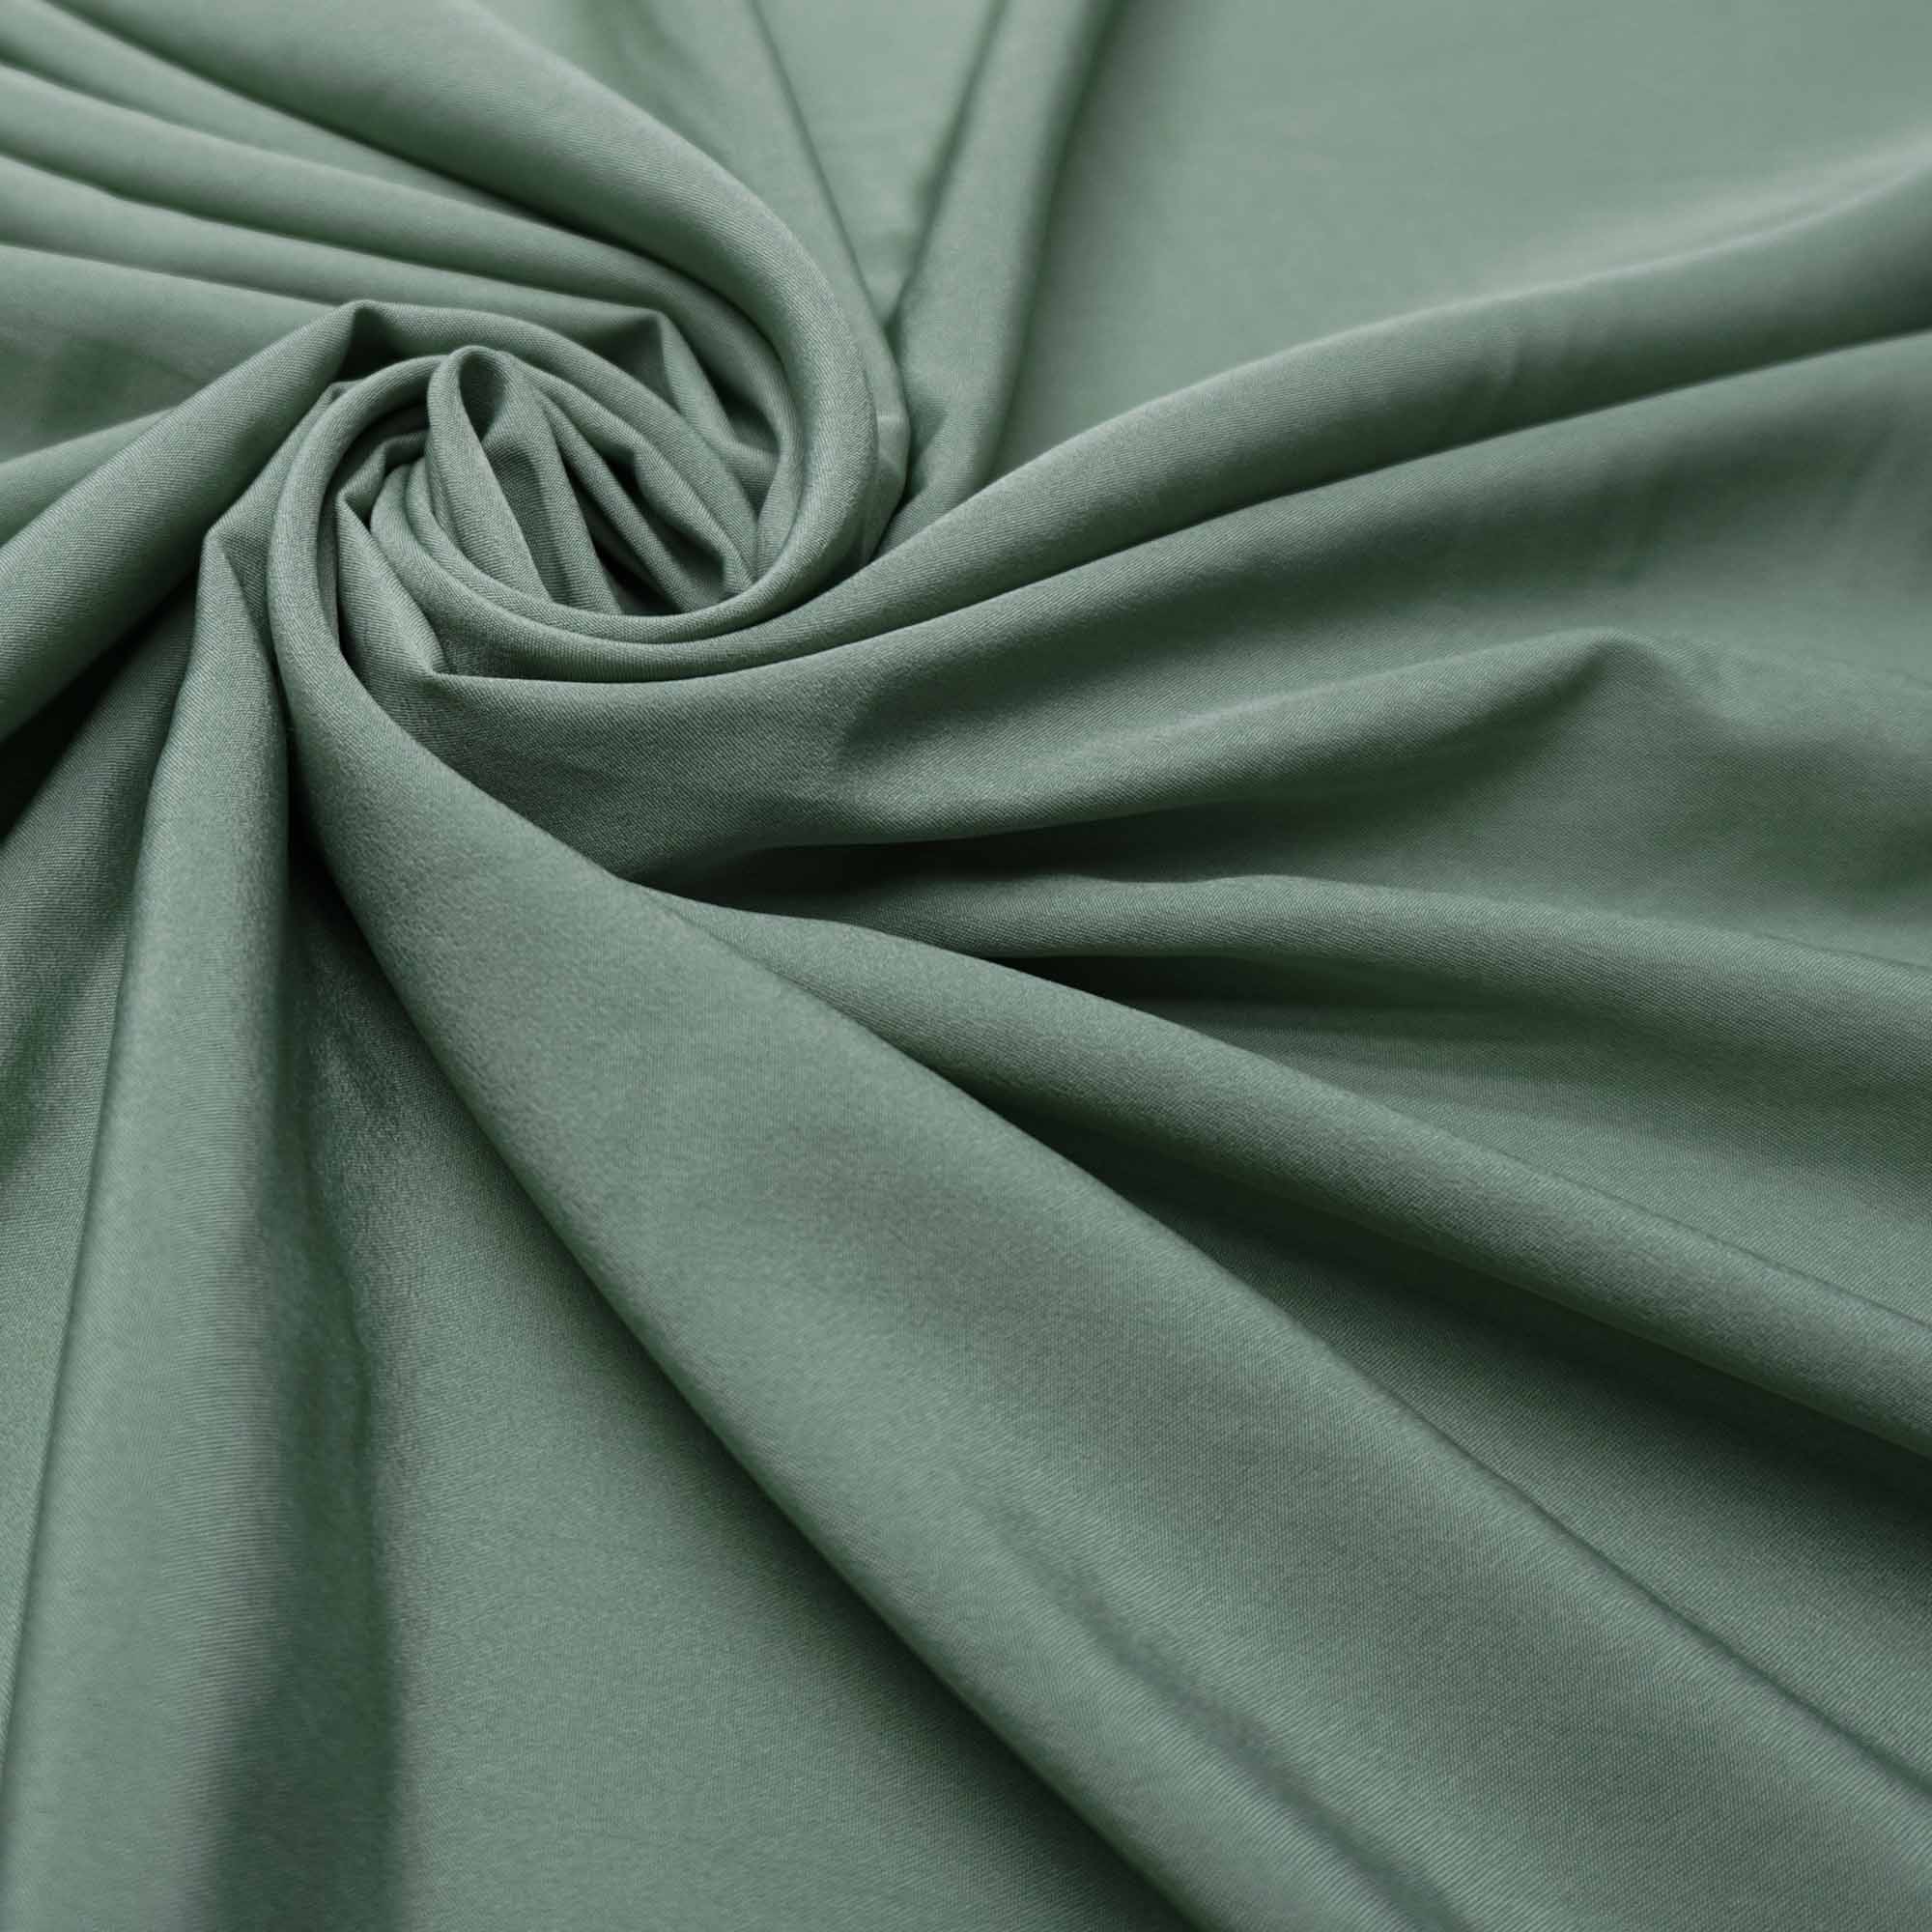 Tecido forro 100% poliester para tecidos leves verde menta